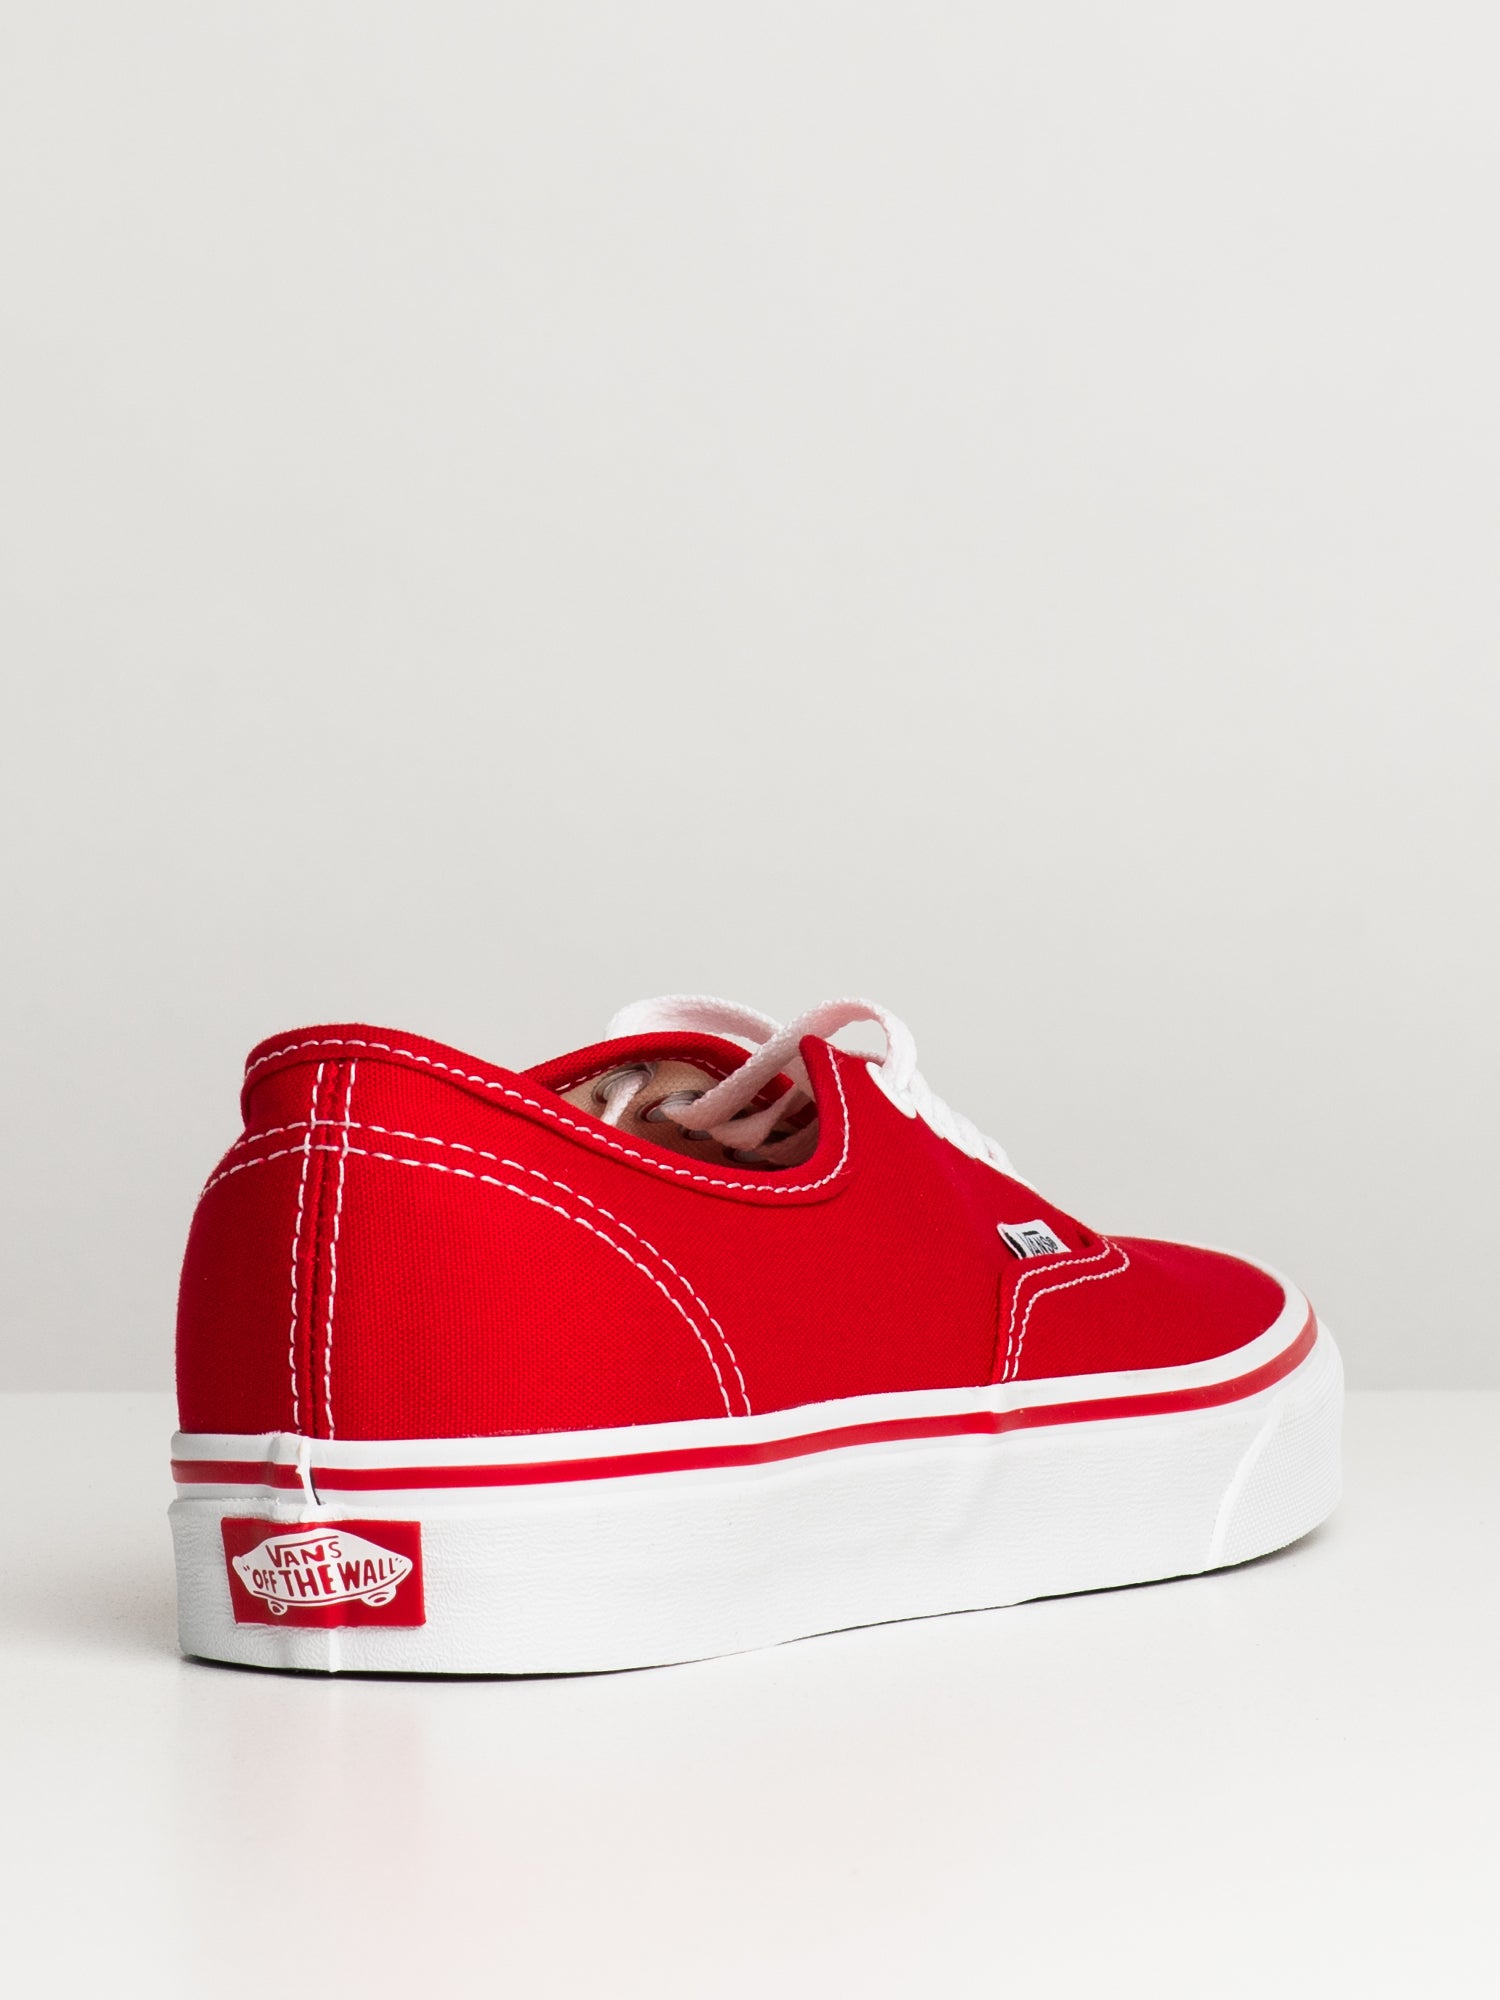 Vans Classic Authentic Red/White Sneaker Skateboarding Shoes for Men | eBay